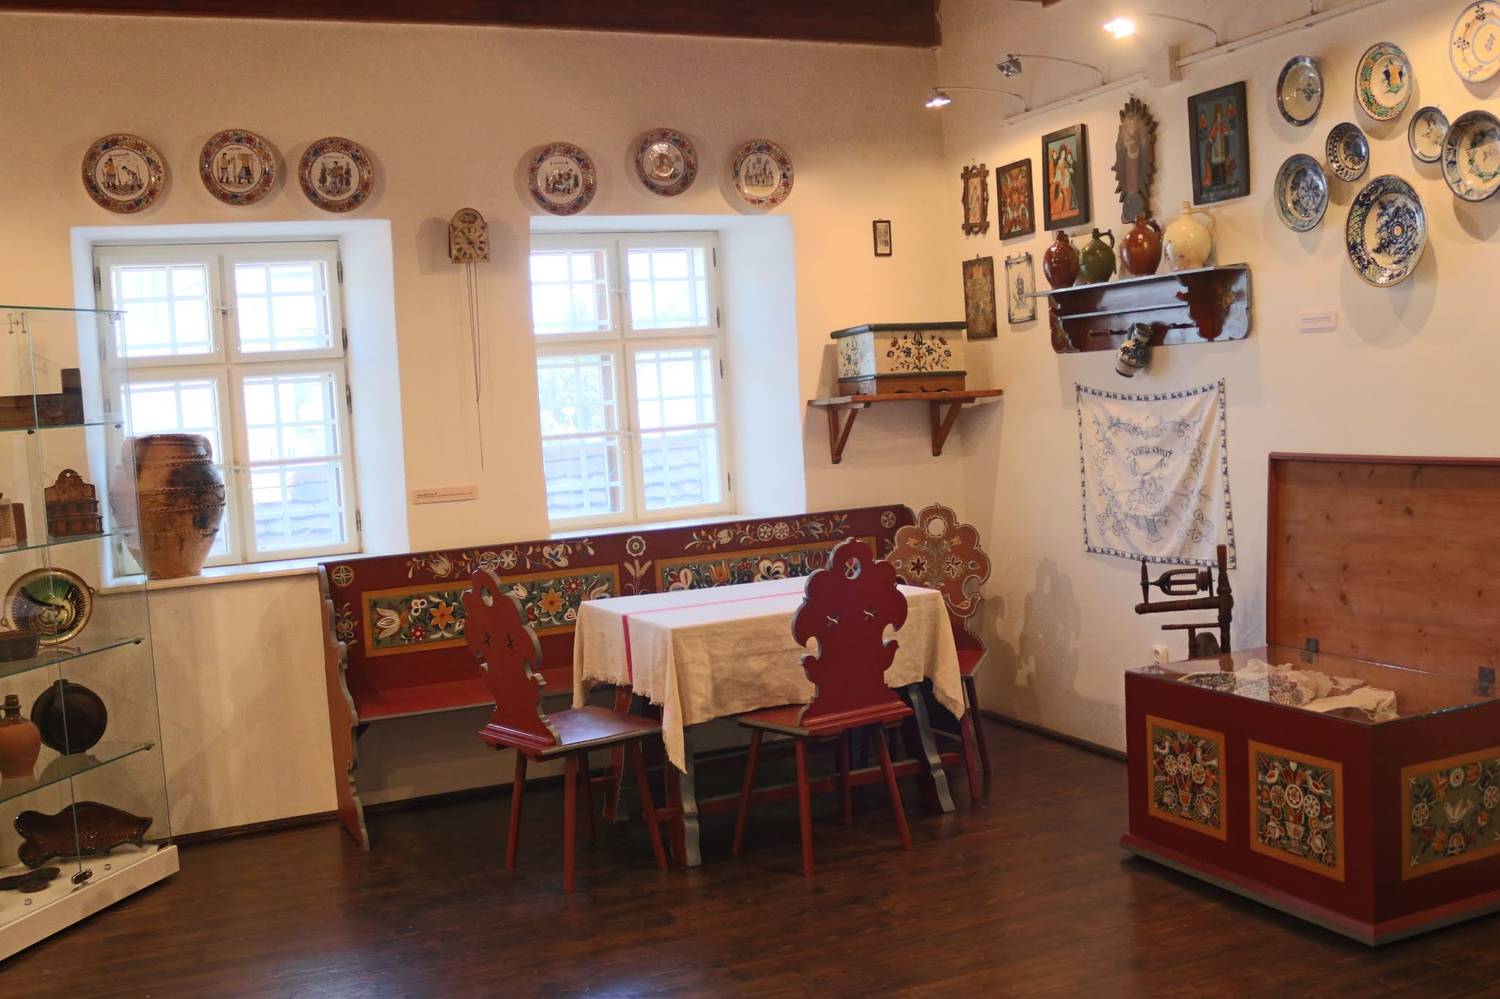 Malokarpatské múzeum v Pezinku